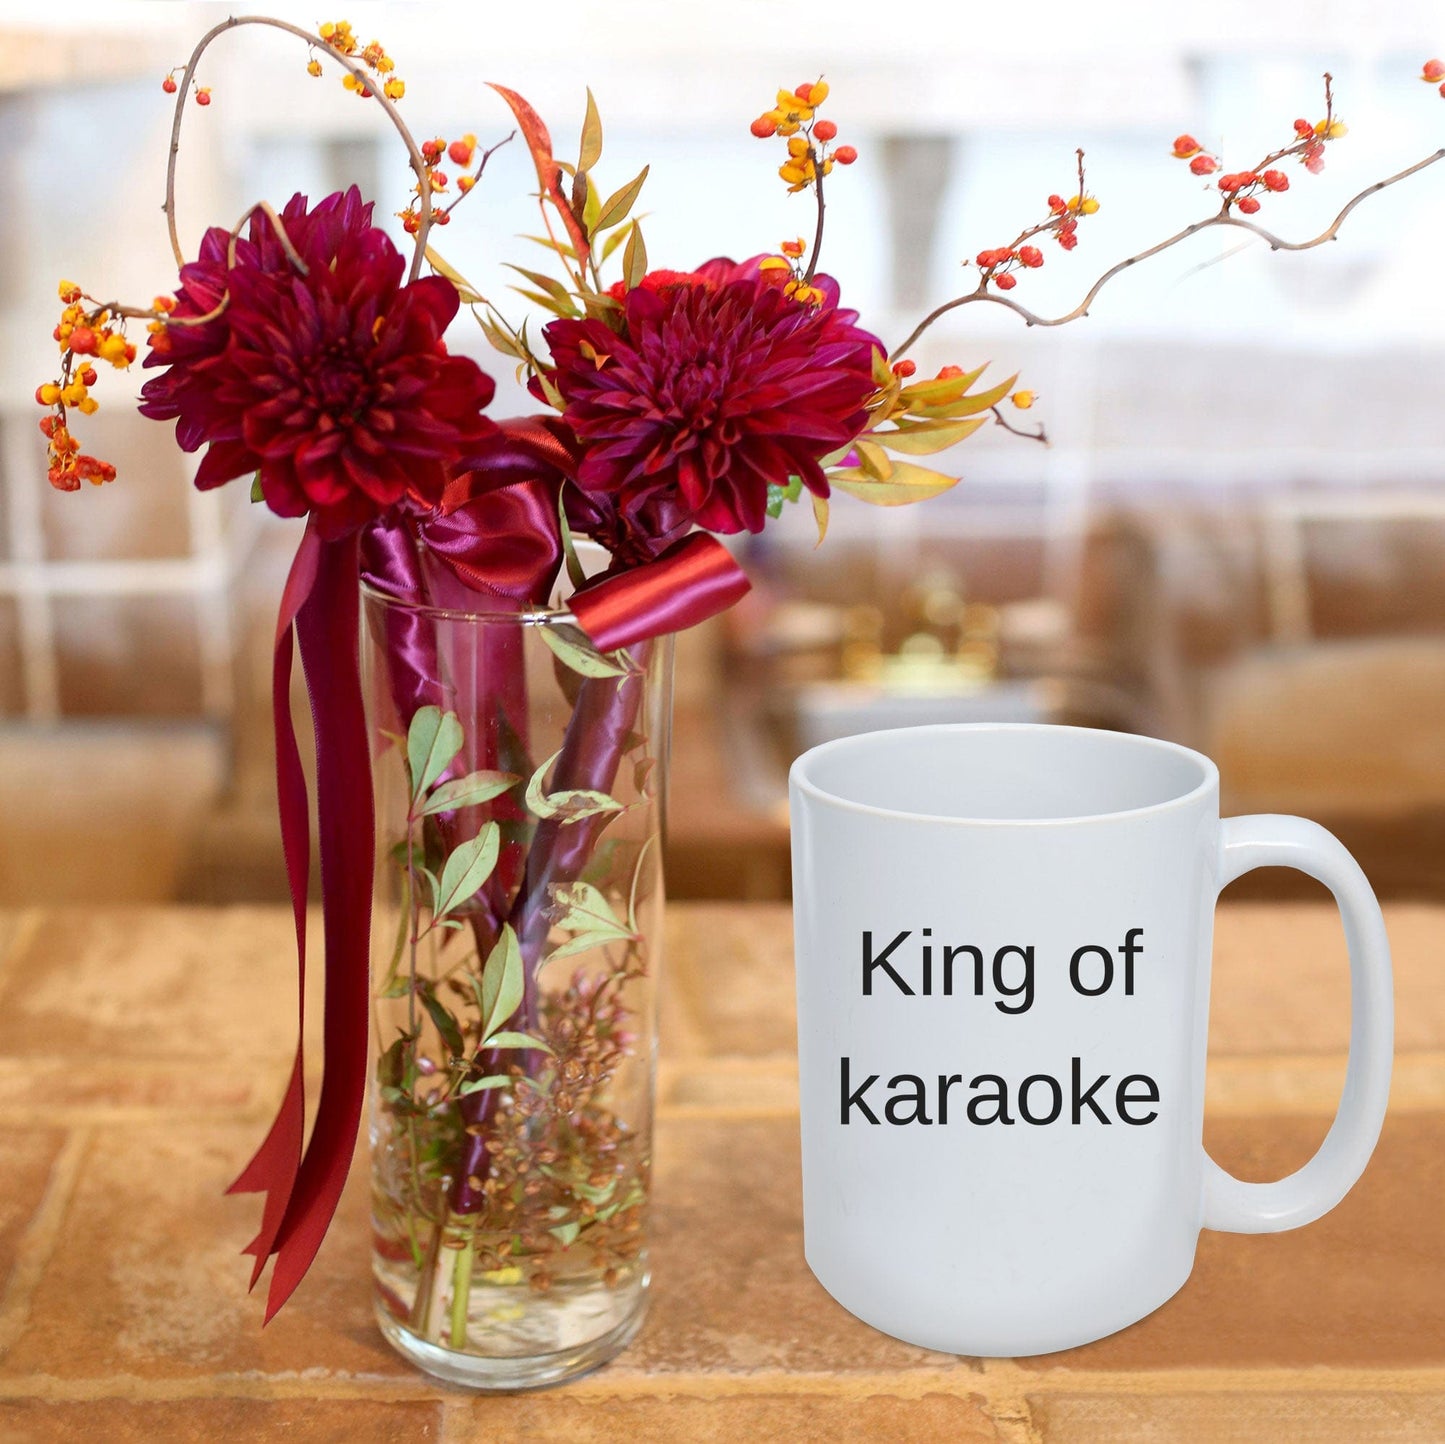 Karaoke Gift - King of karaoke funny coffee mug